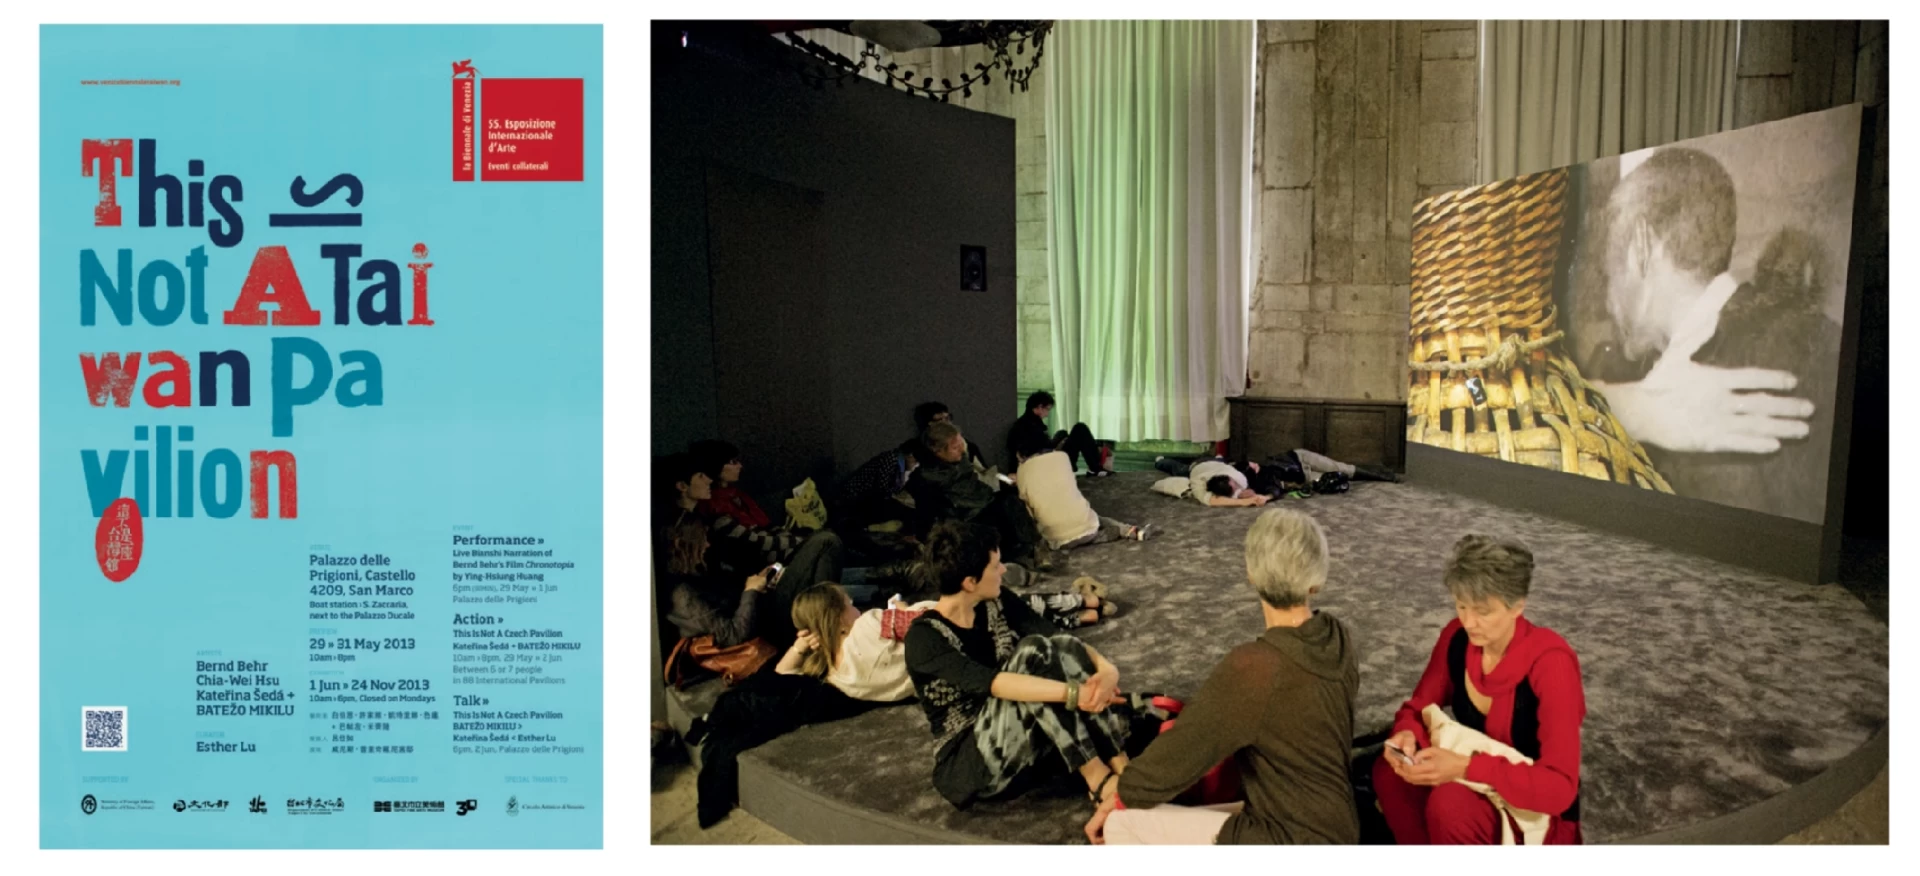 第55屆威尼斯雙年展台灣館「這不是一座台灣館」海報及展場大廳一景，白伯恩作品《時托邦》，2013.06-圖片